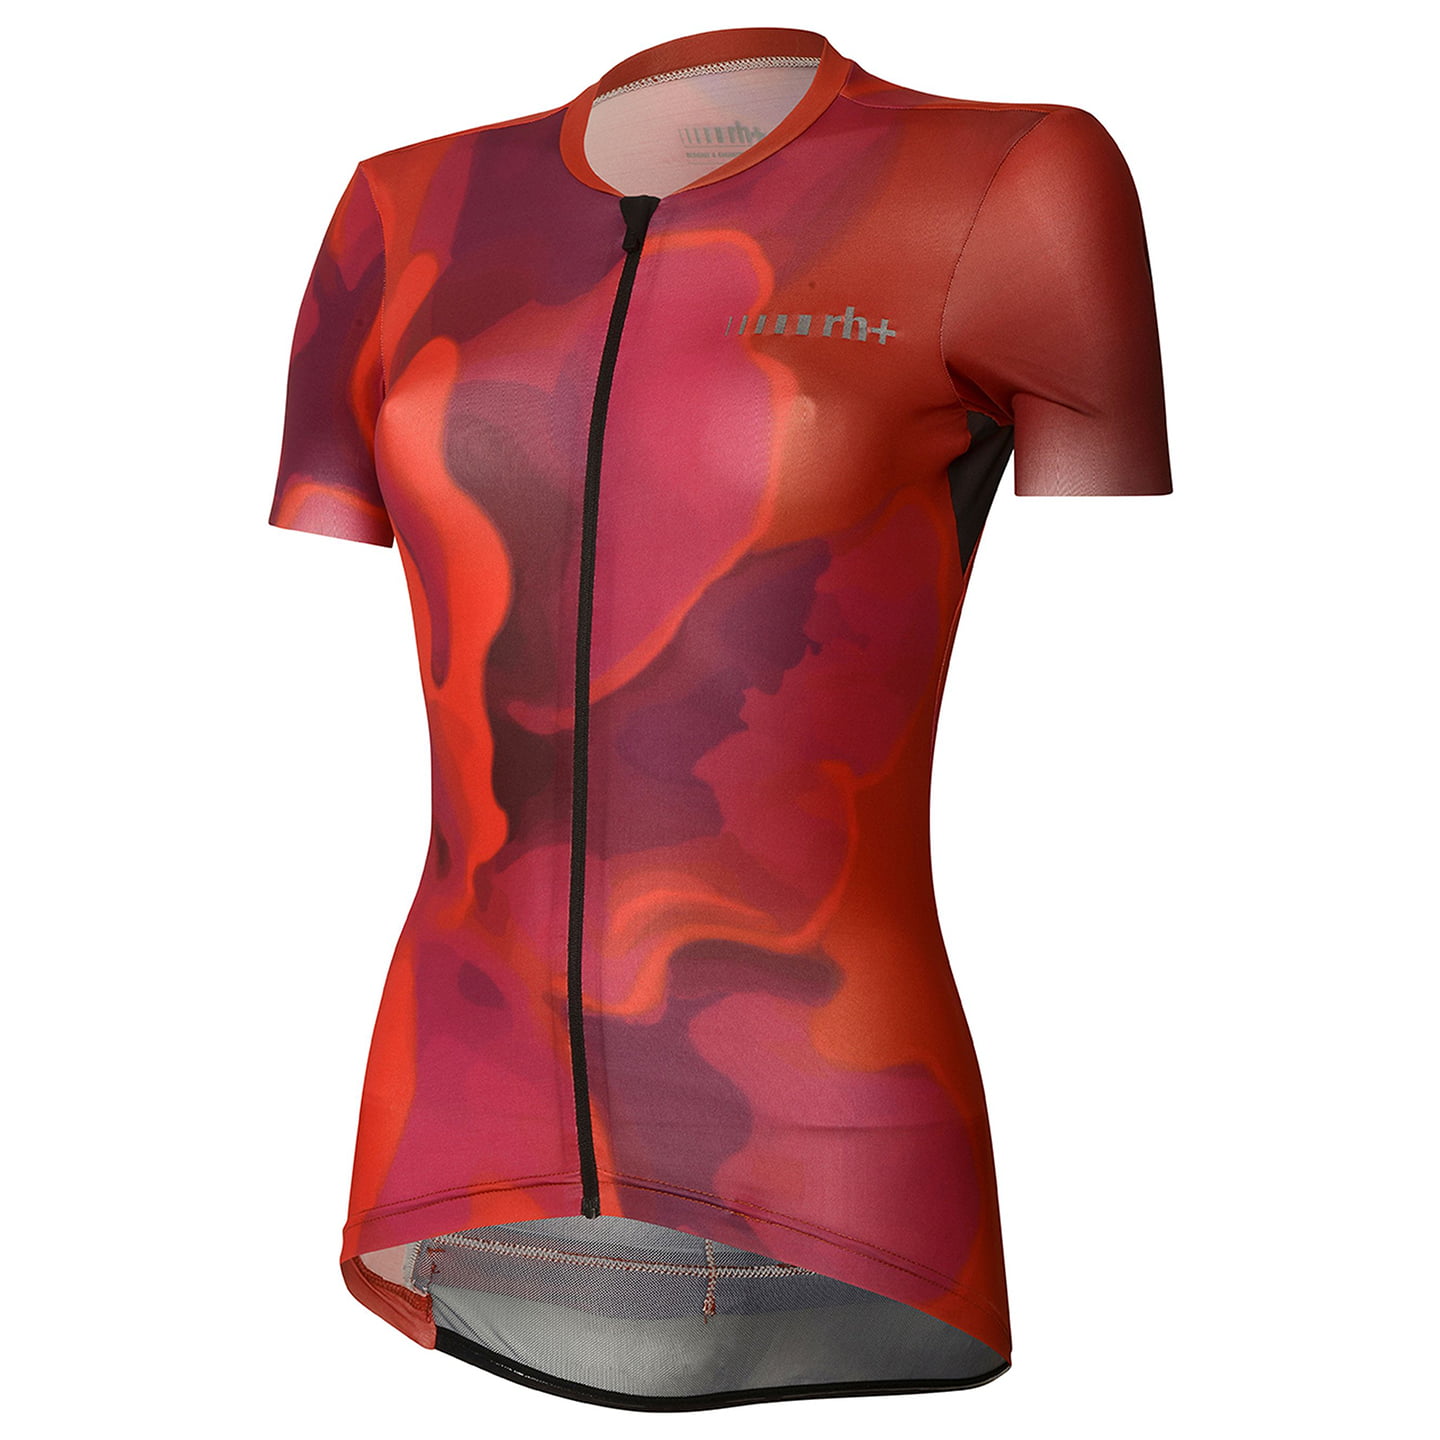 rh+ Super Light Evo Women’s Jersey Women’s Short Sleeve Jersey, size S, Cycling jersey, Cycle gear